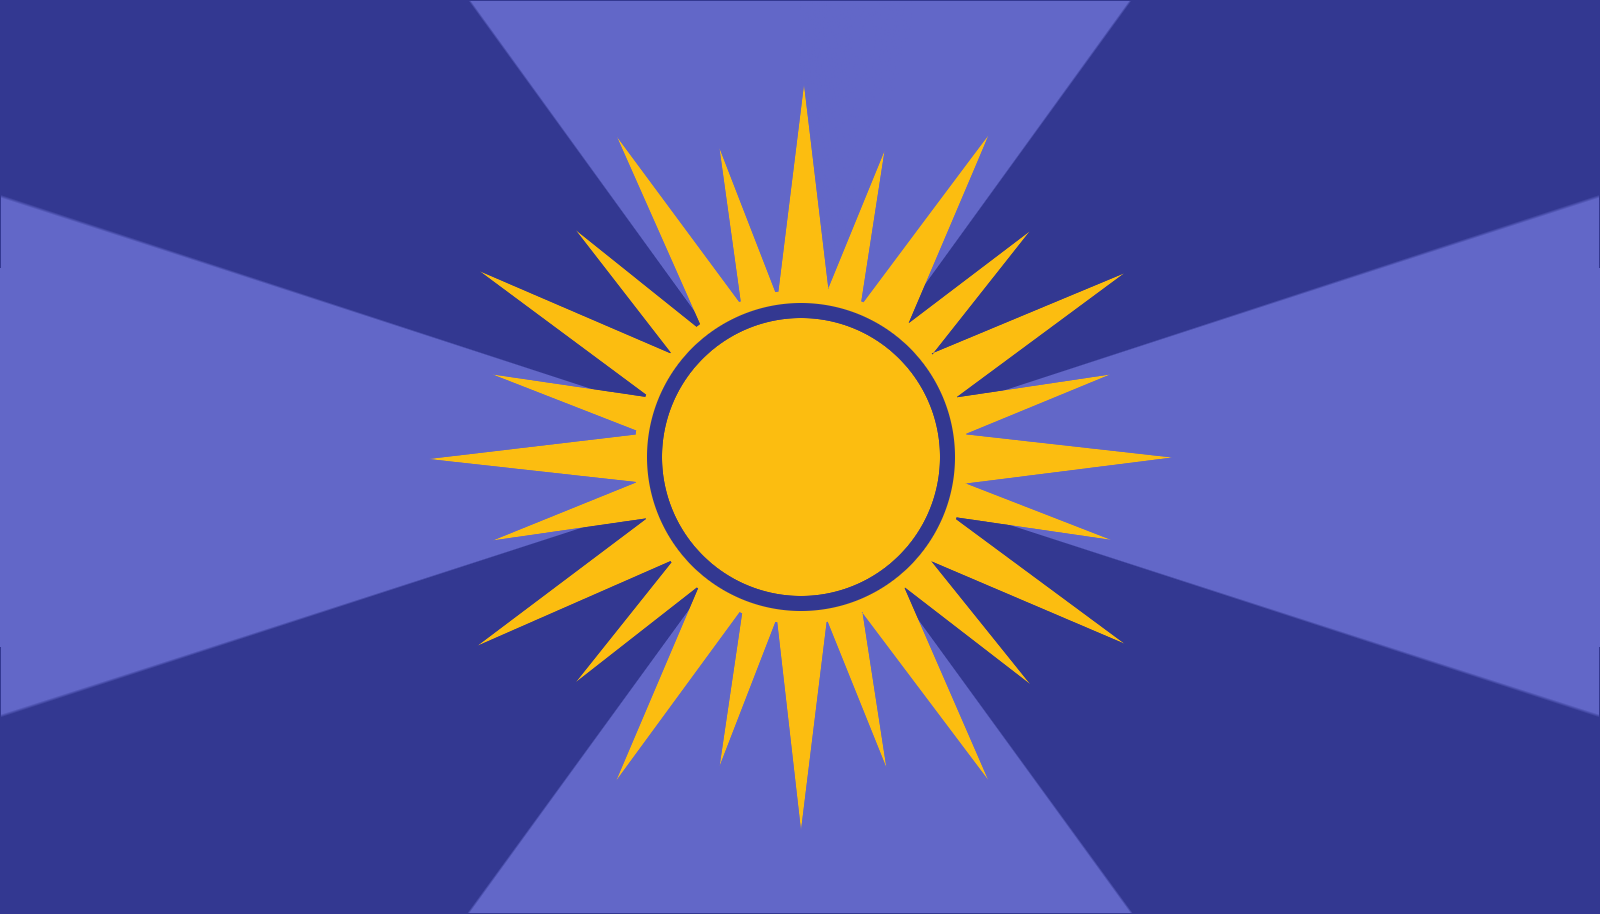 Summerville's flag